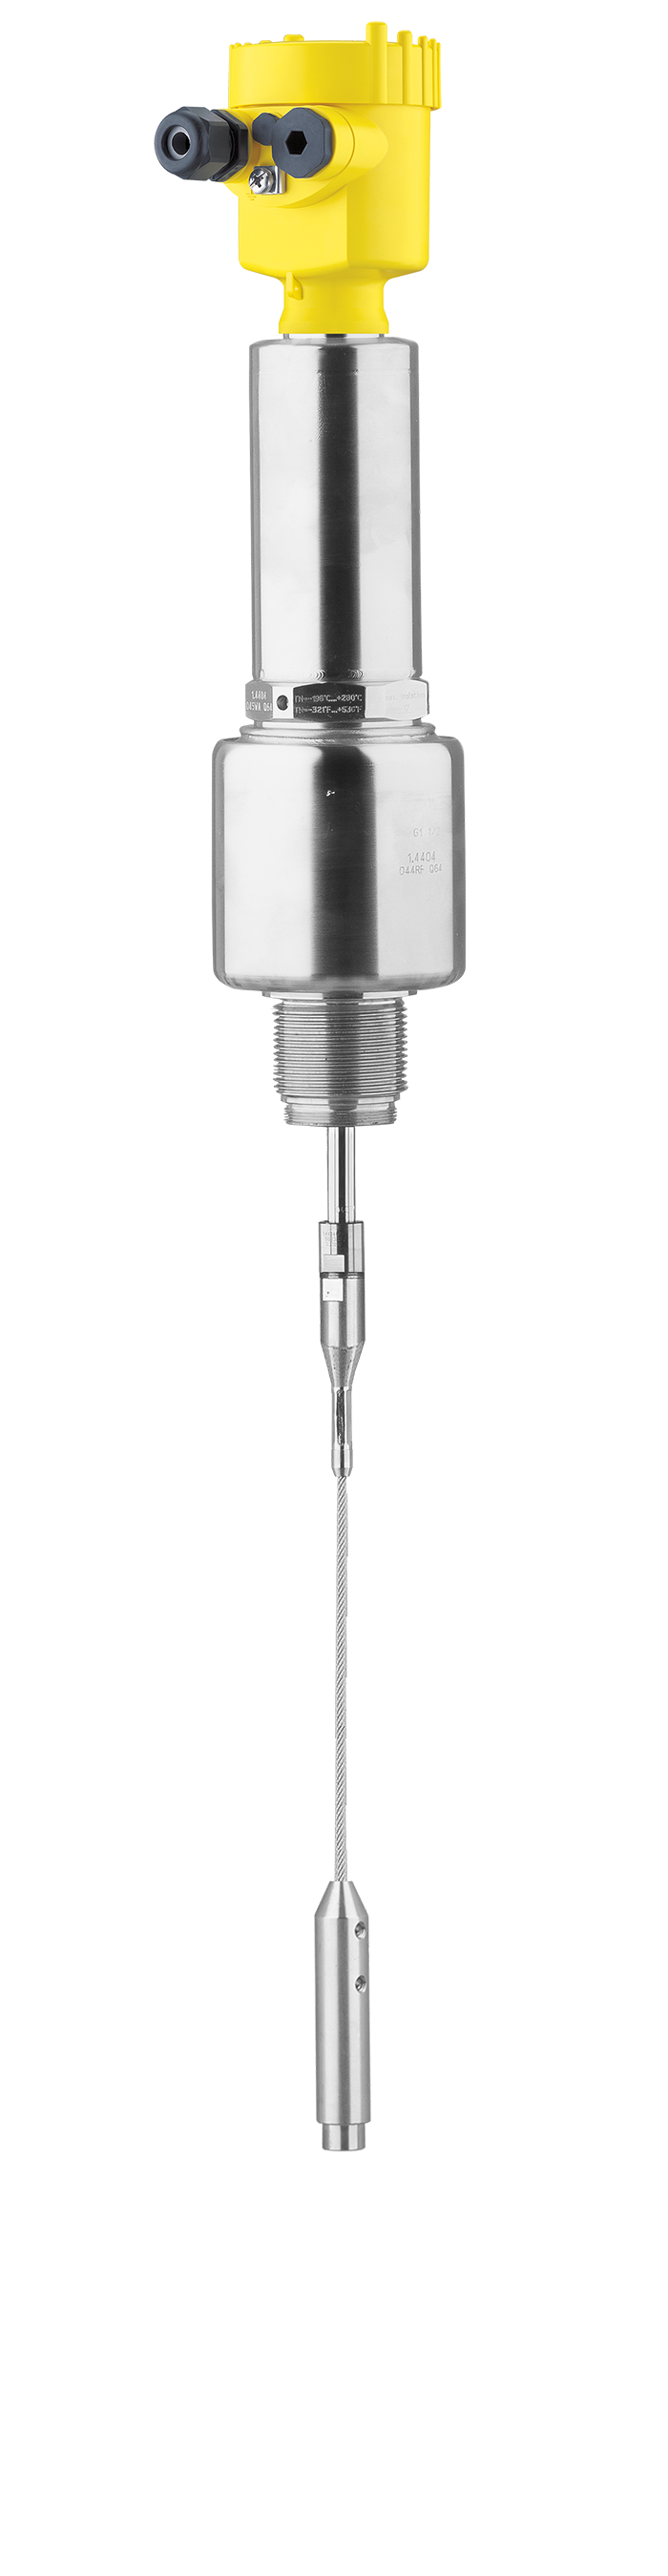 VEGAFLEX 86 - Sensore TDR per la misura continua di livello e d'interfase su liquidi